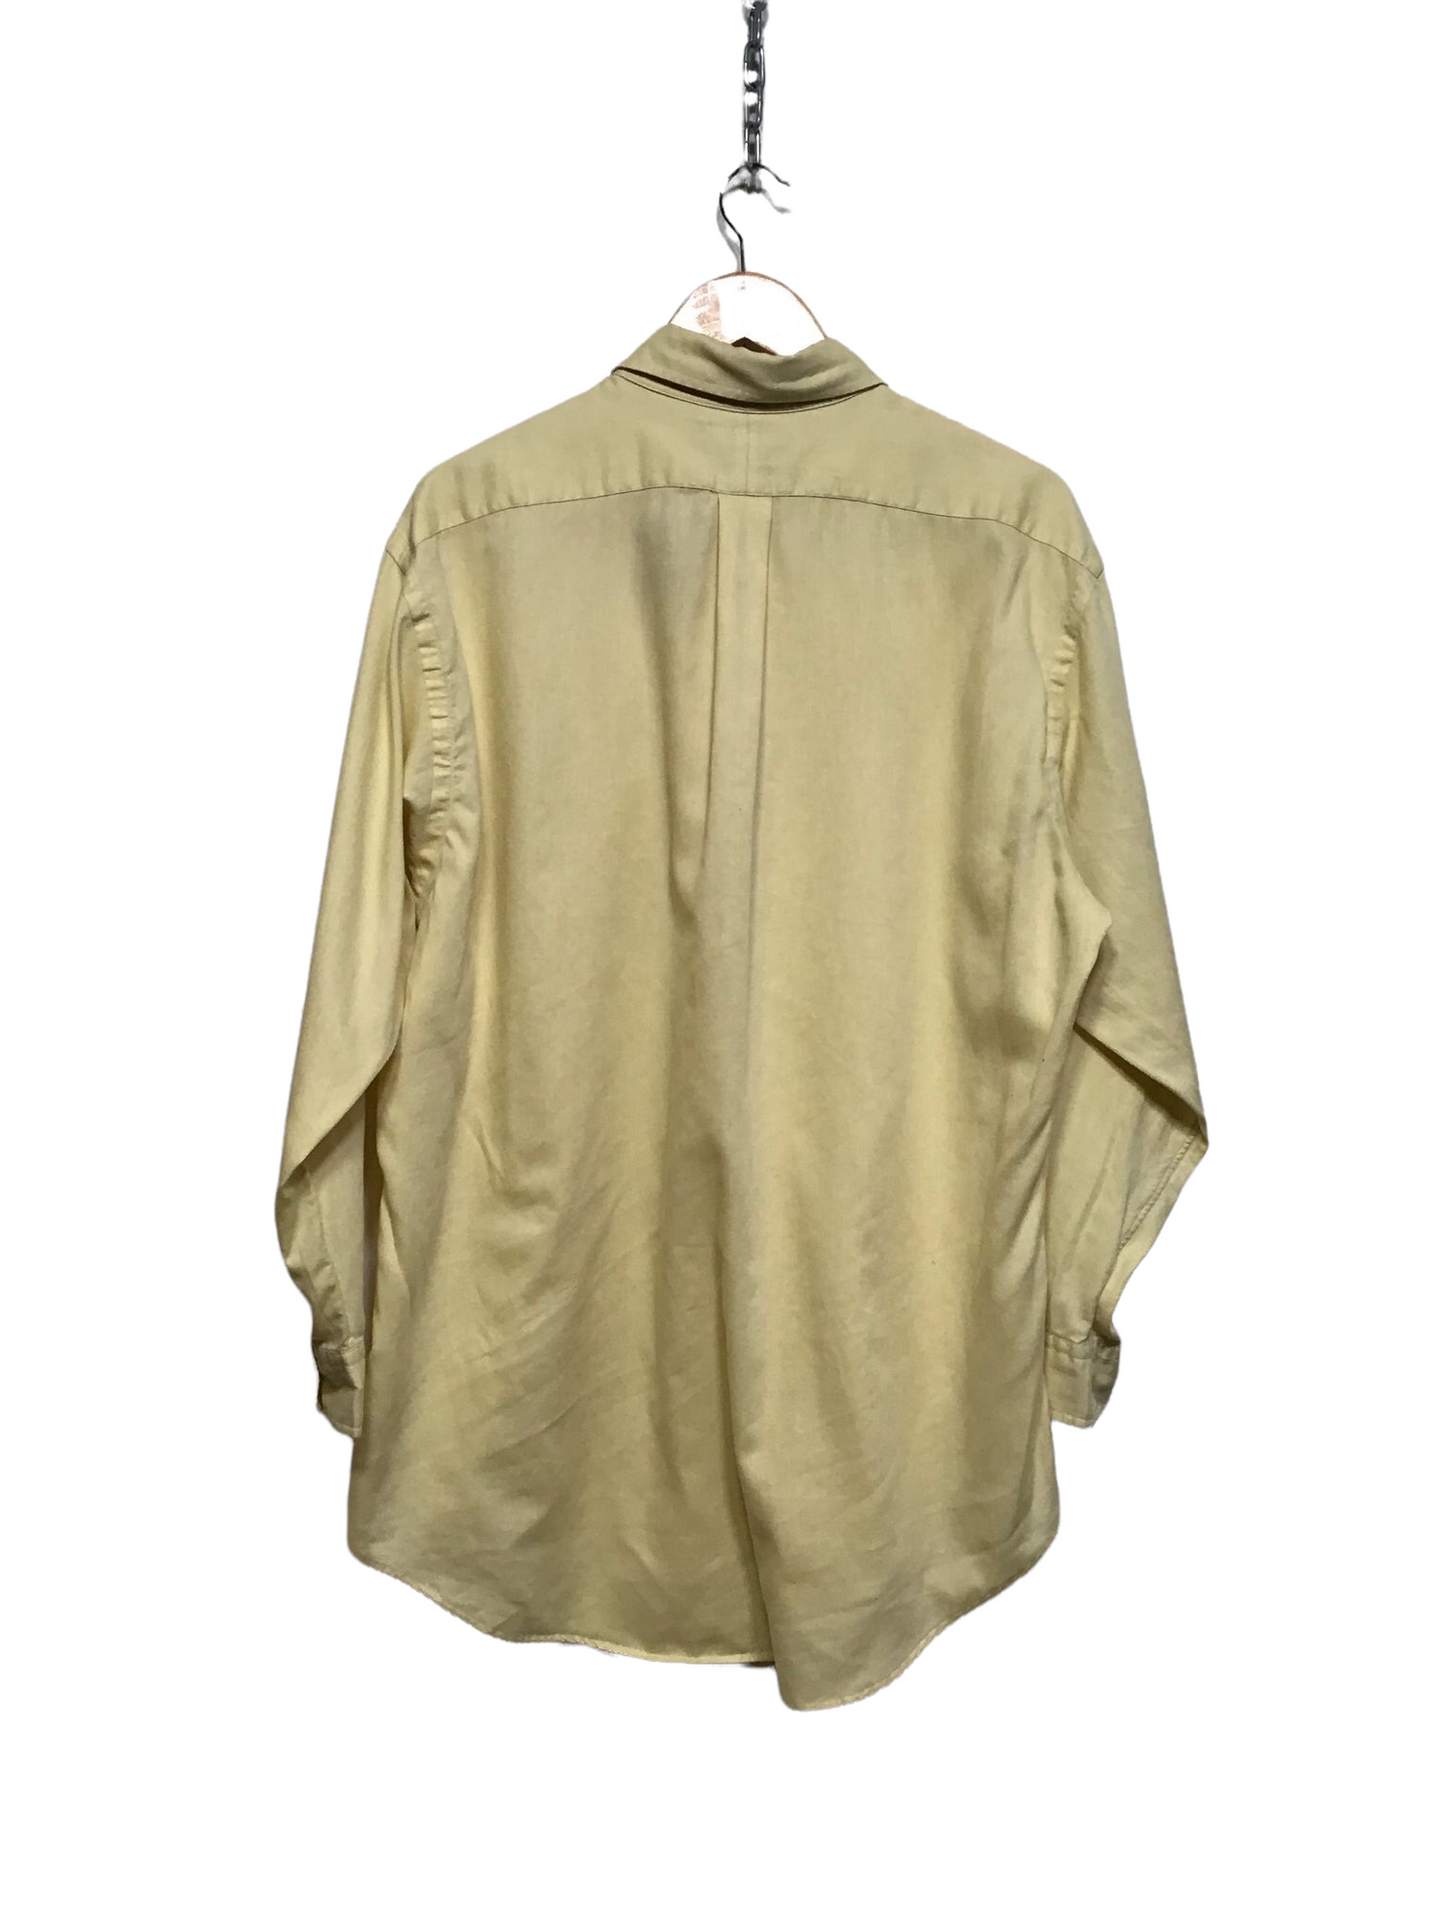 Ralph Lauren Yellow Shirt (Size XL)